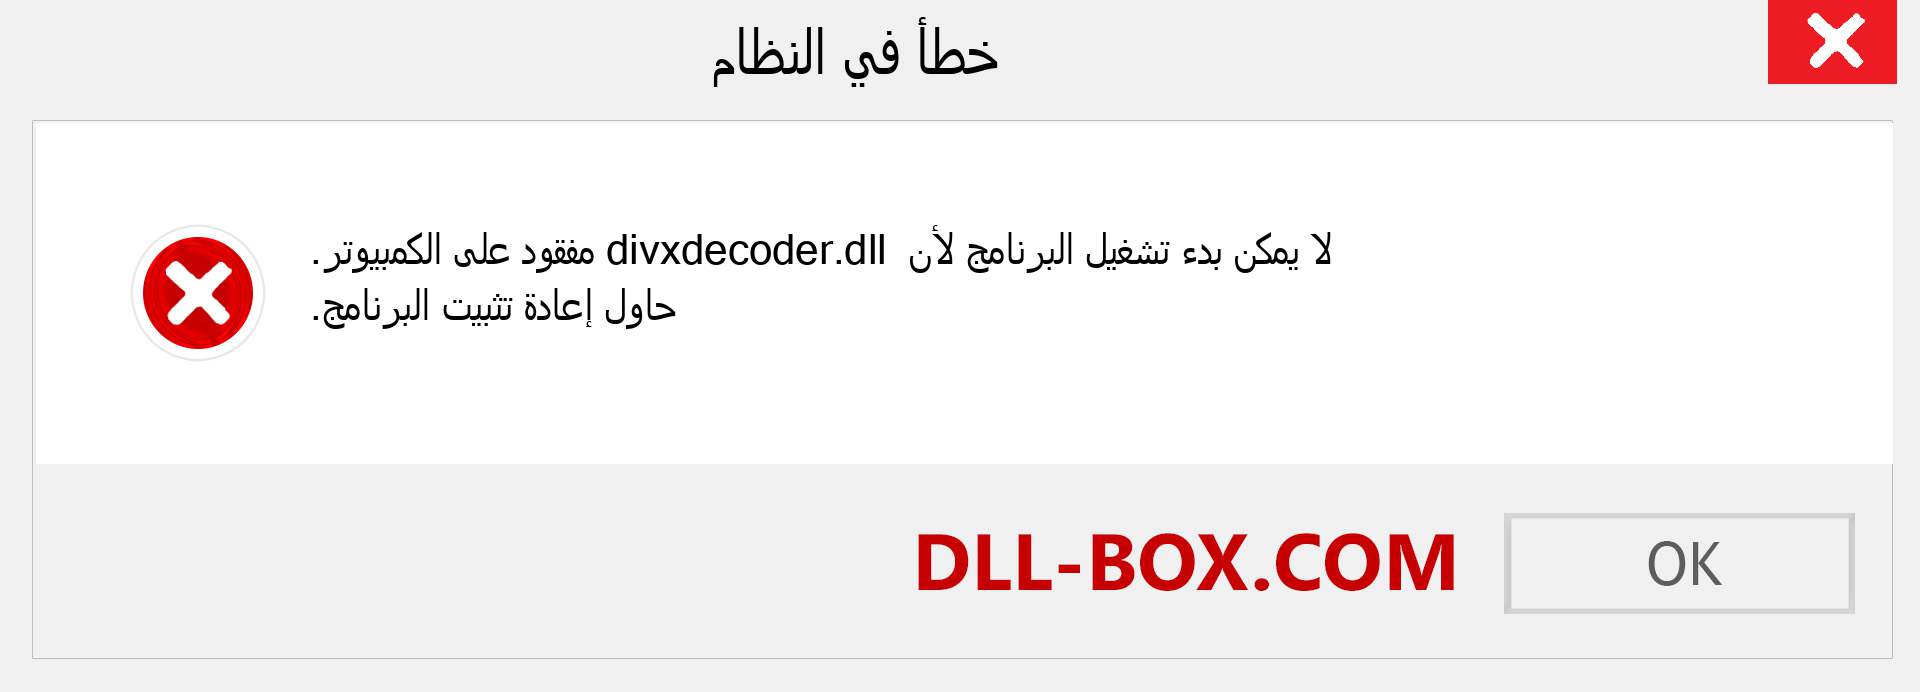 ملف divxdecoder.dll مفقود ؟. التنزيل لنظام التشغيل Windows 7 و 8 و 10 - إصلاح خطأ divxdecoder dll المفقود على Windows والصور والصور